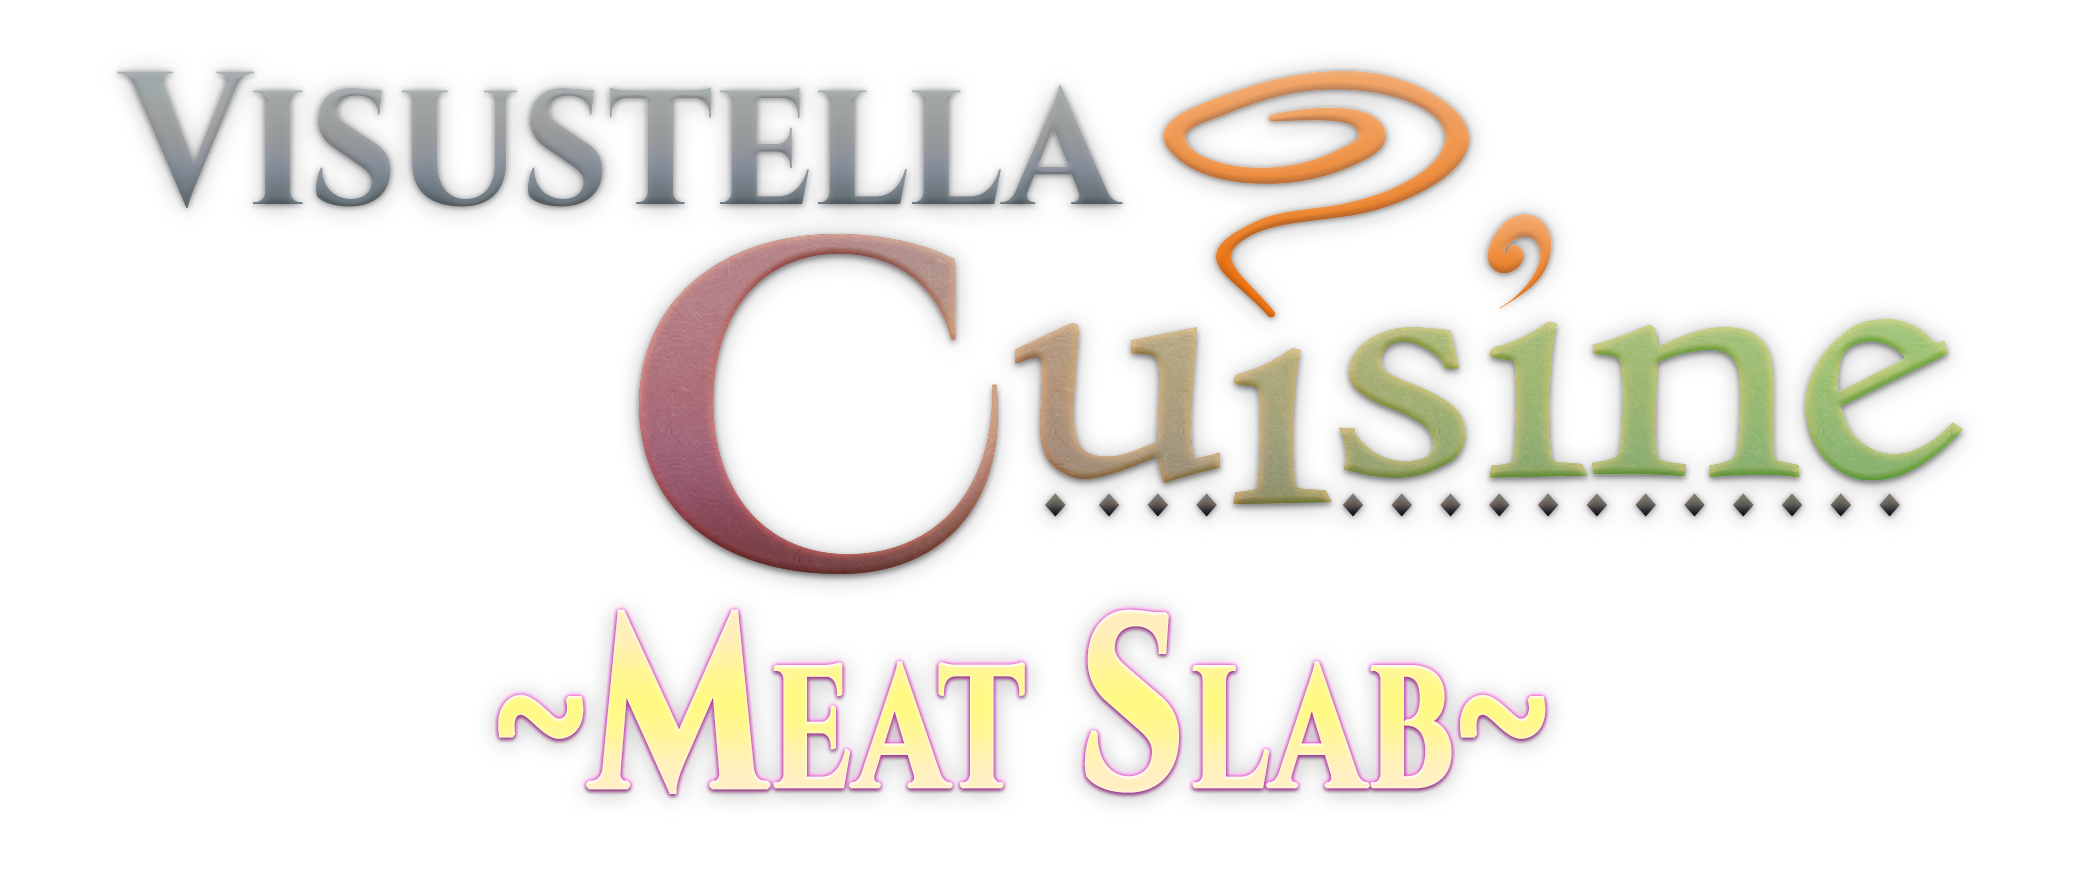 VisuStella Cuisine: Meat Slab